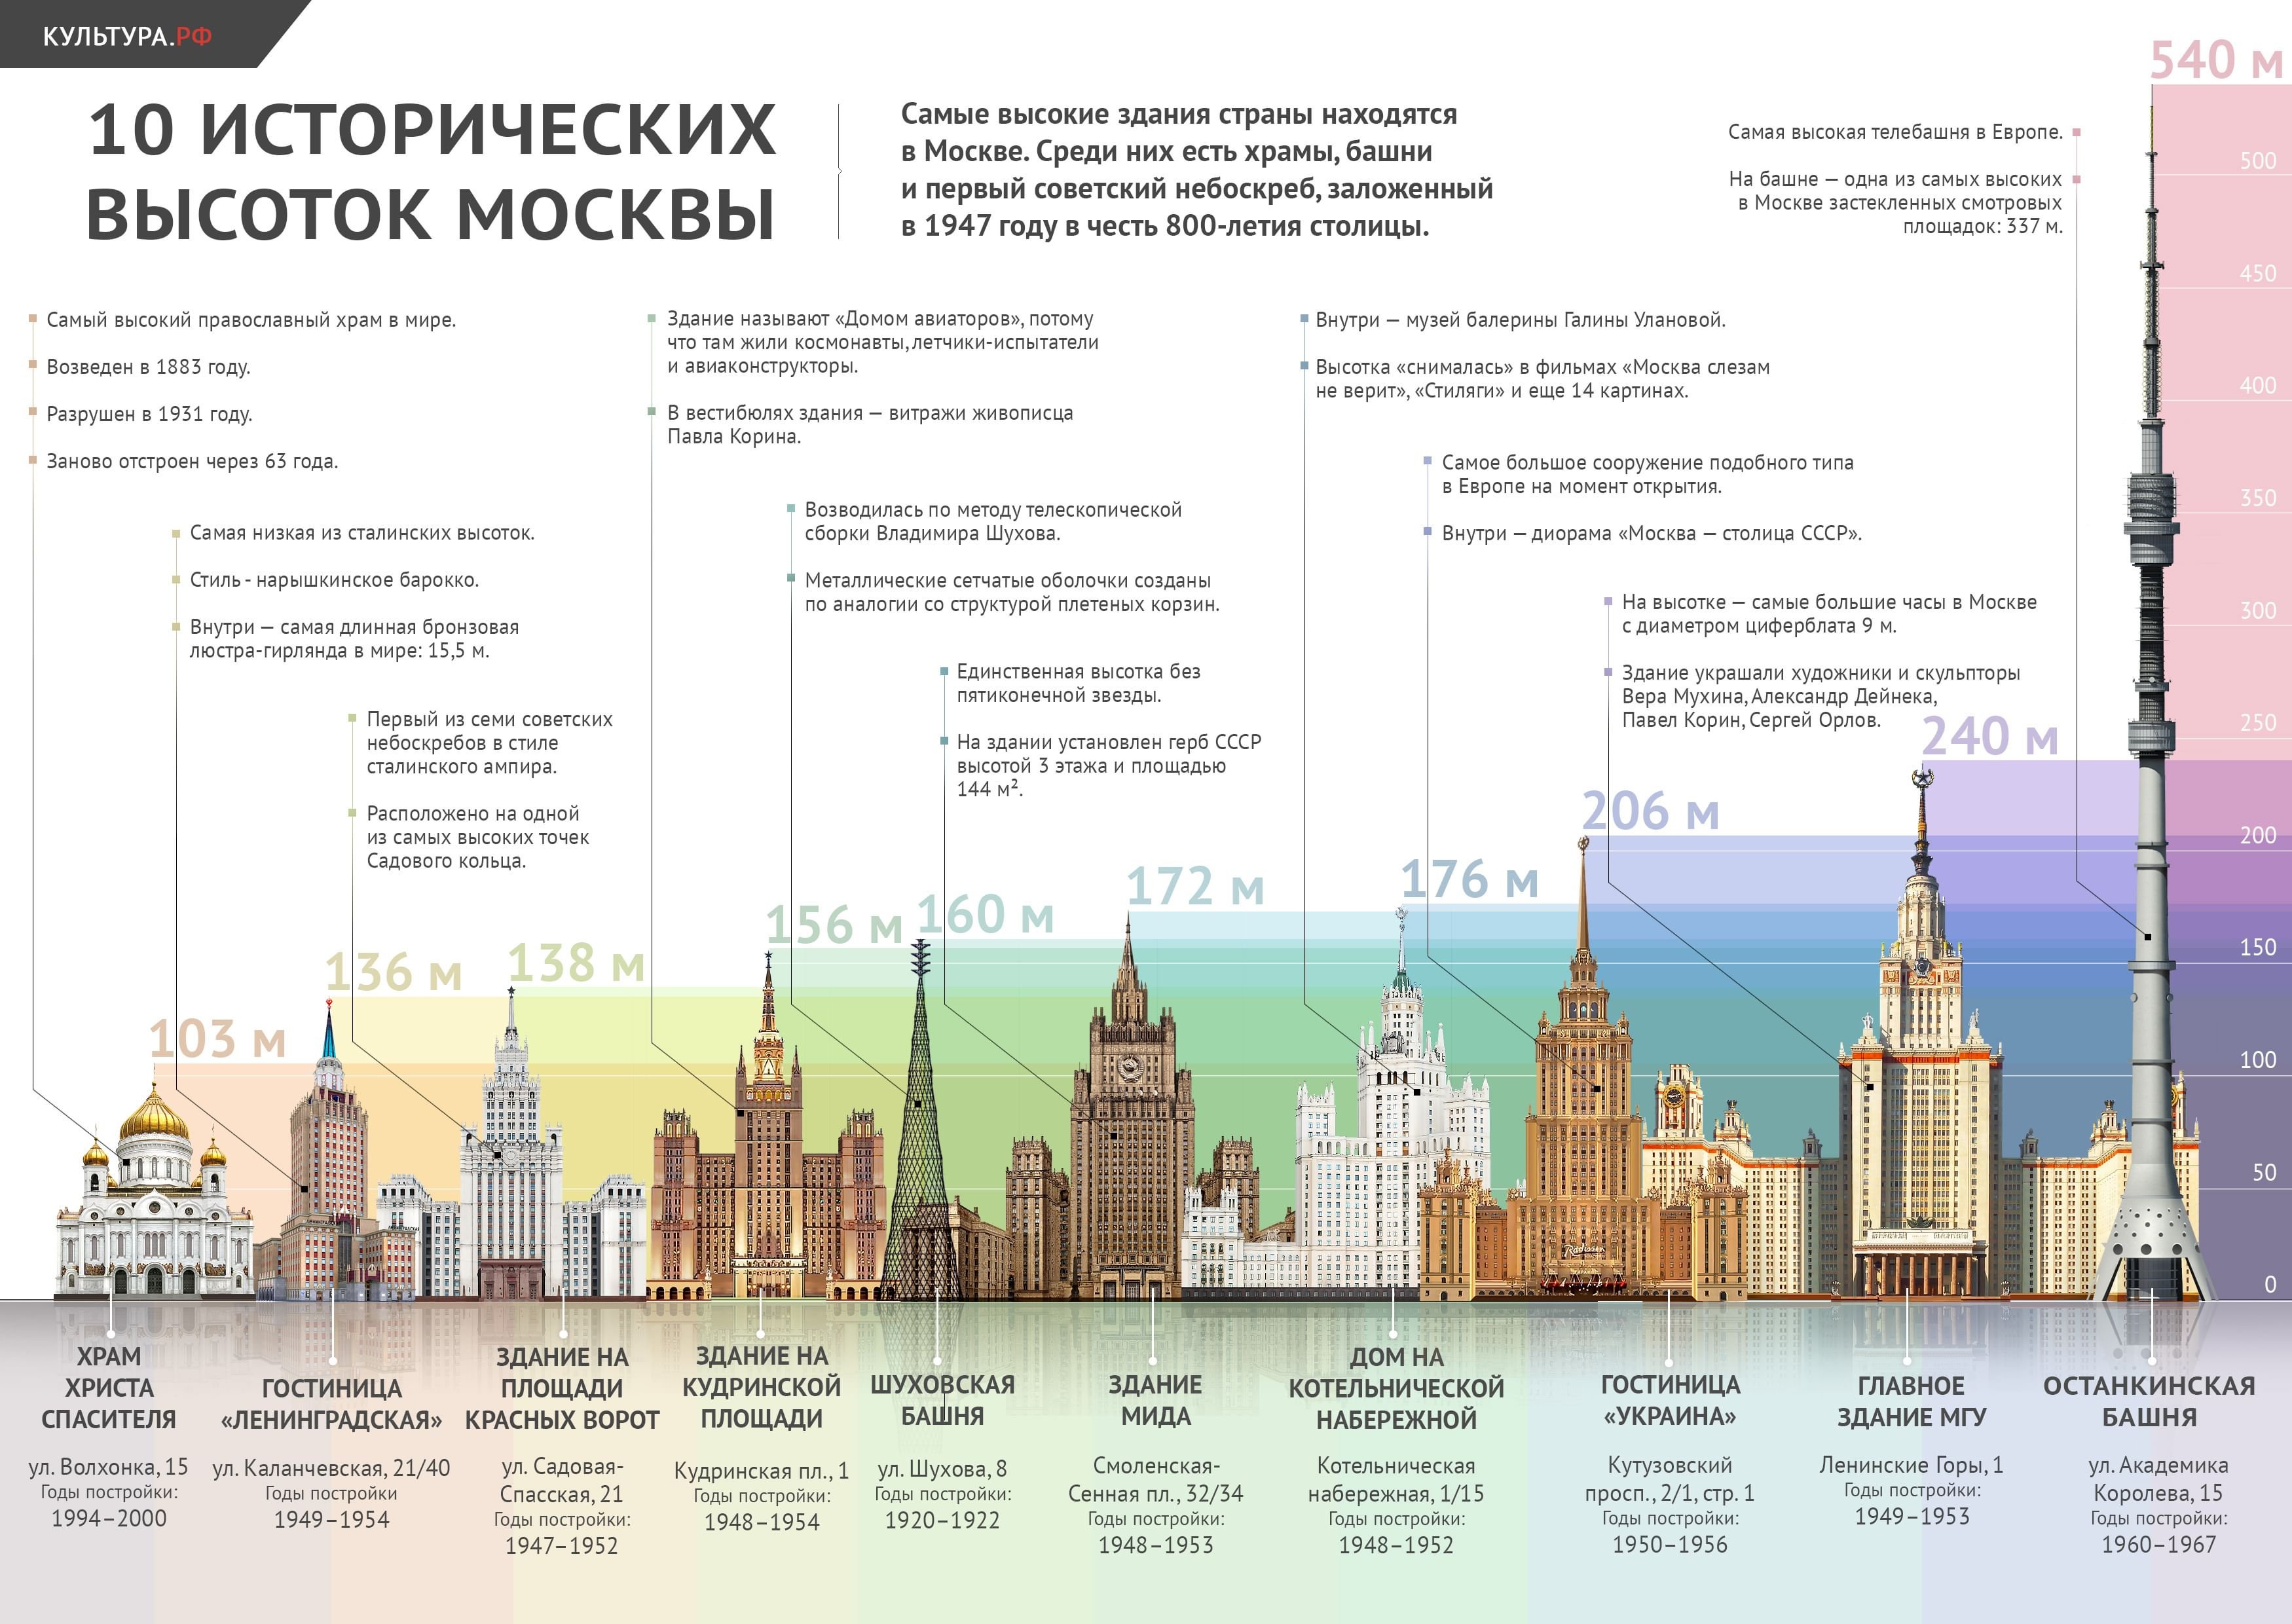 Насколько москва. Сталинские высотки Москвы 7 штук. 7 Сталинских высоток в Москве названия. Сталинские высотки в Москве на карте. 7 Сталинских высоток в Москве на карте.